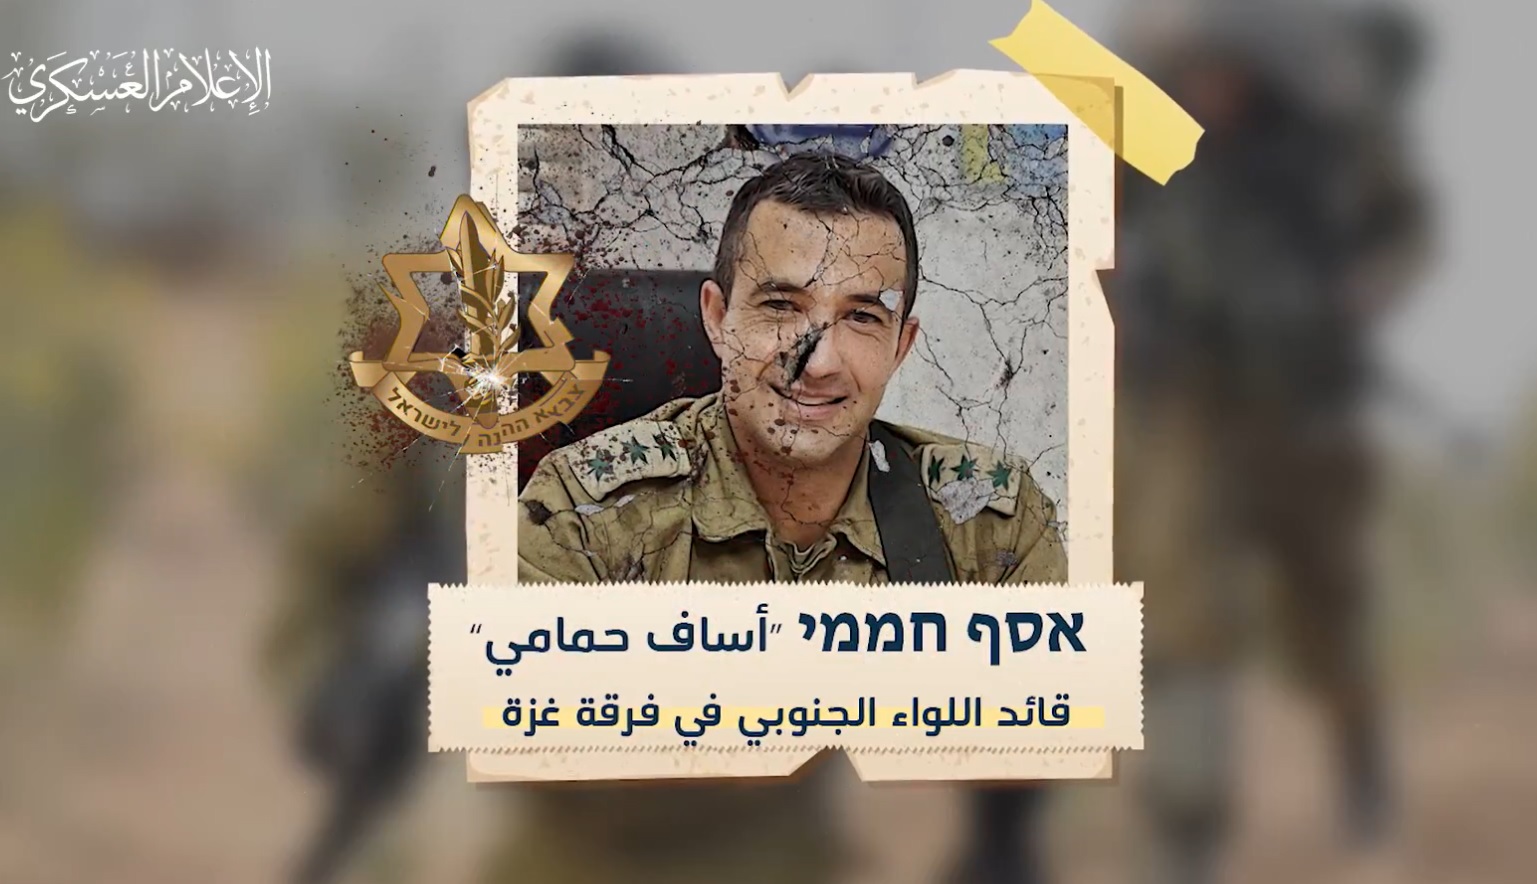 قائد اللواء الجنوبي بفرقة غزة في جيش الاحتلال أساف حمامي